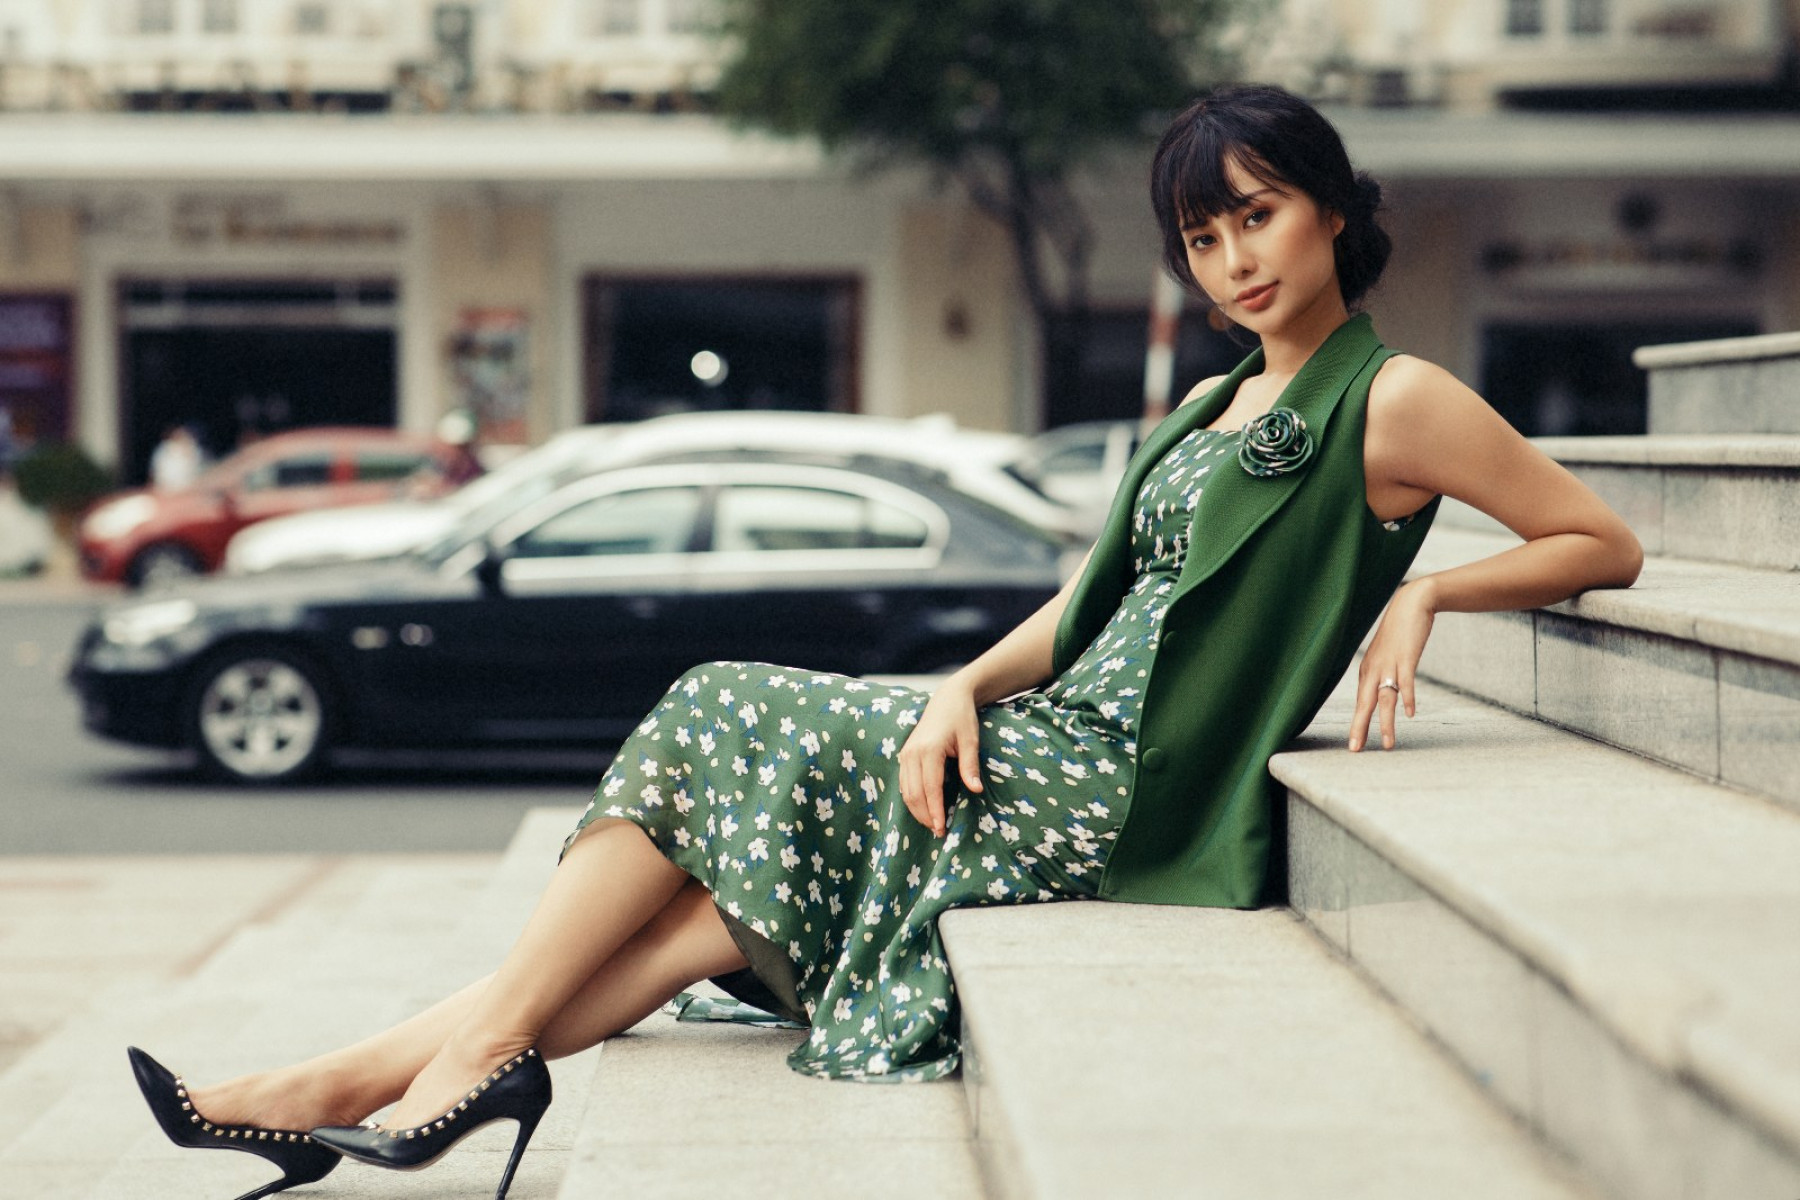 Ngoài danh hiệu Hoa hậu Điện ảnh 2016, Huỳnh Yến Trinh còn được biết đến khi tham gia nhiều bộ phim Việt